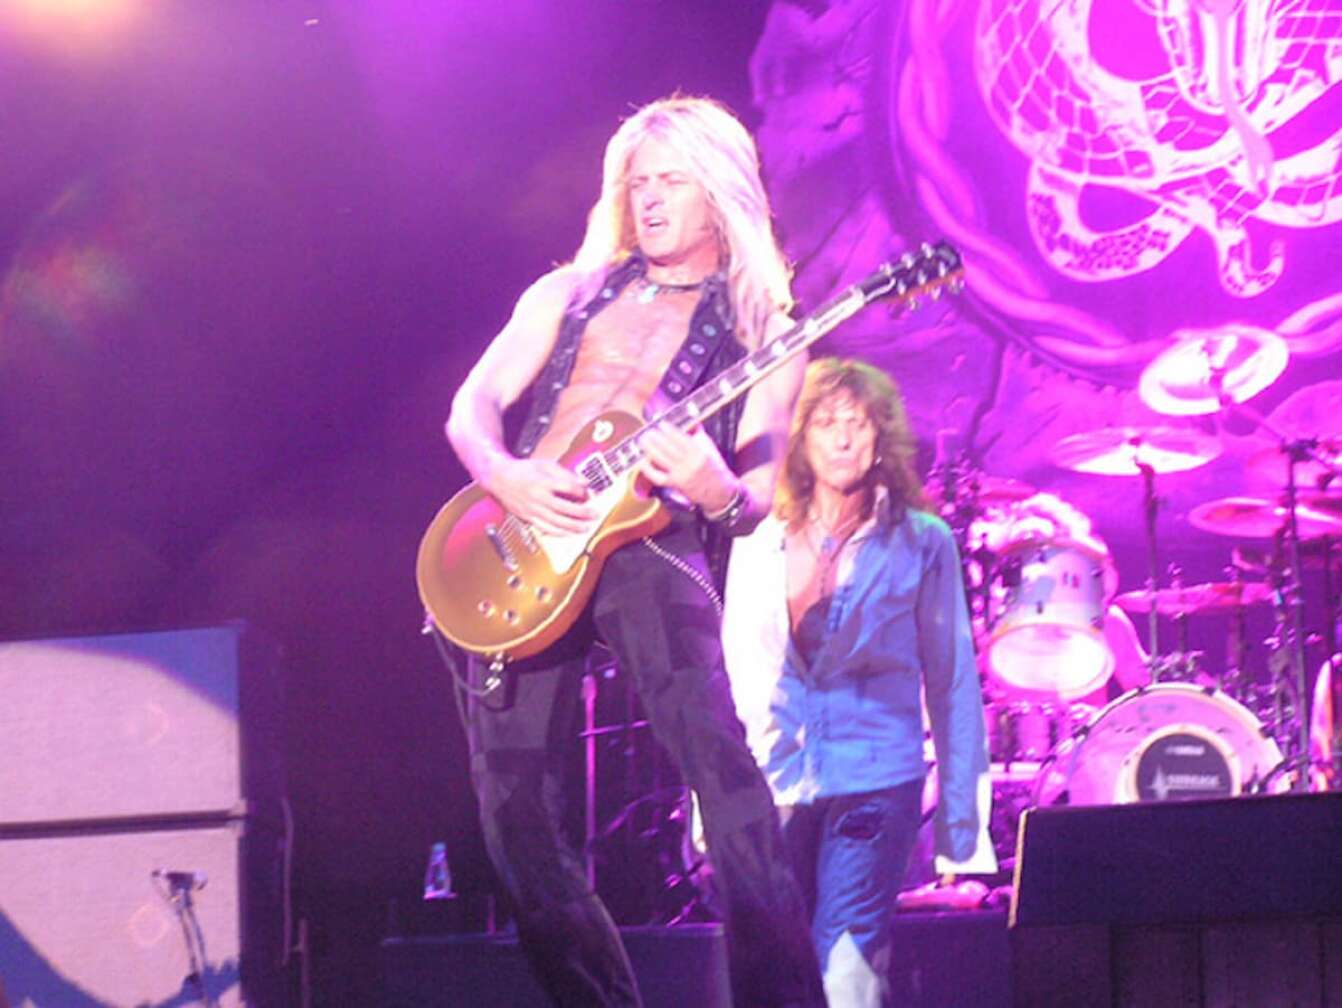 Gitarrist von Whitesnake auf der Bühne